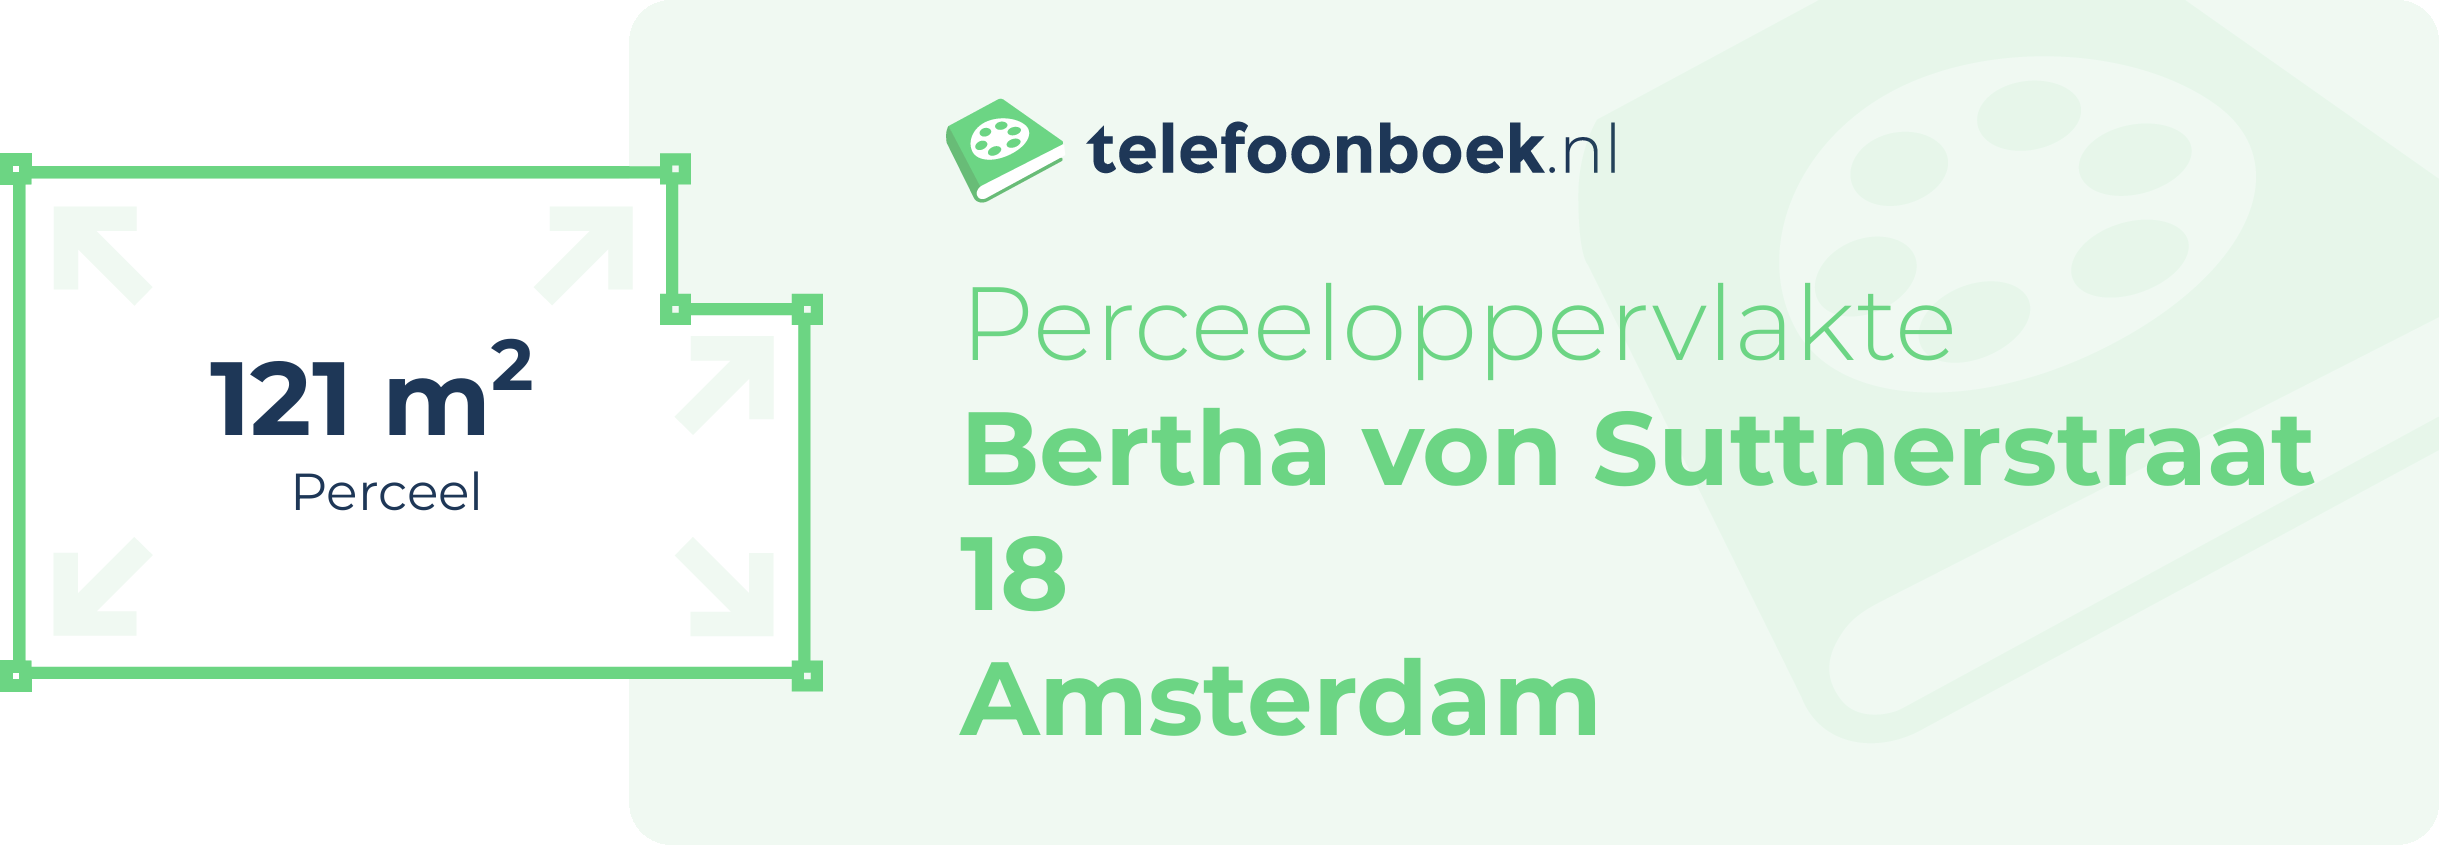 Perceeloppervlakte Bertha Von Suttnerstraat 18 Amsterdam